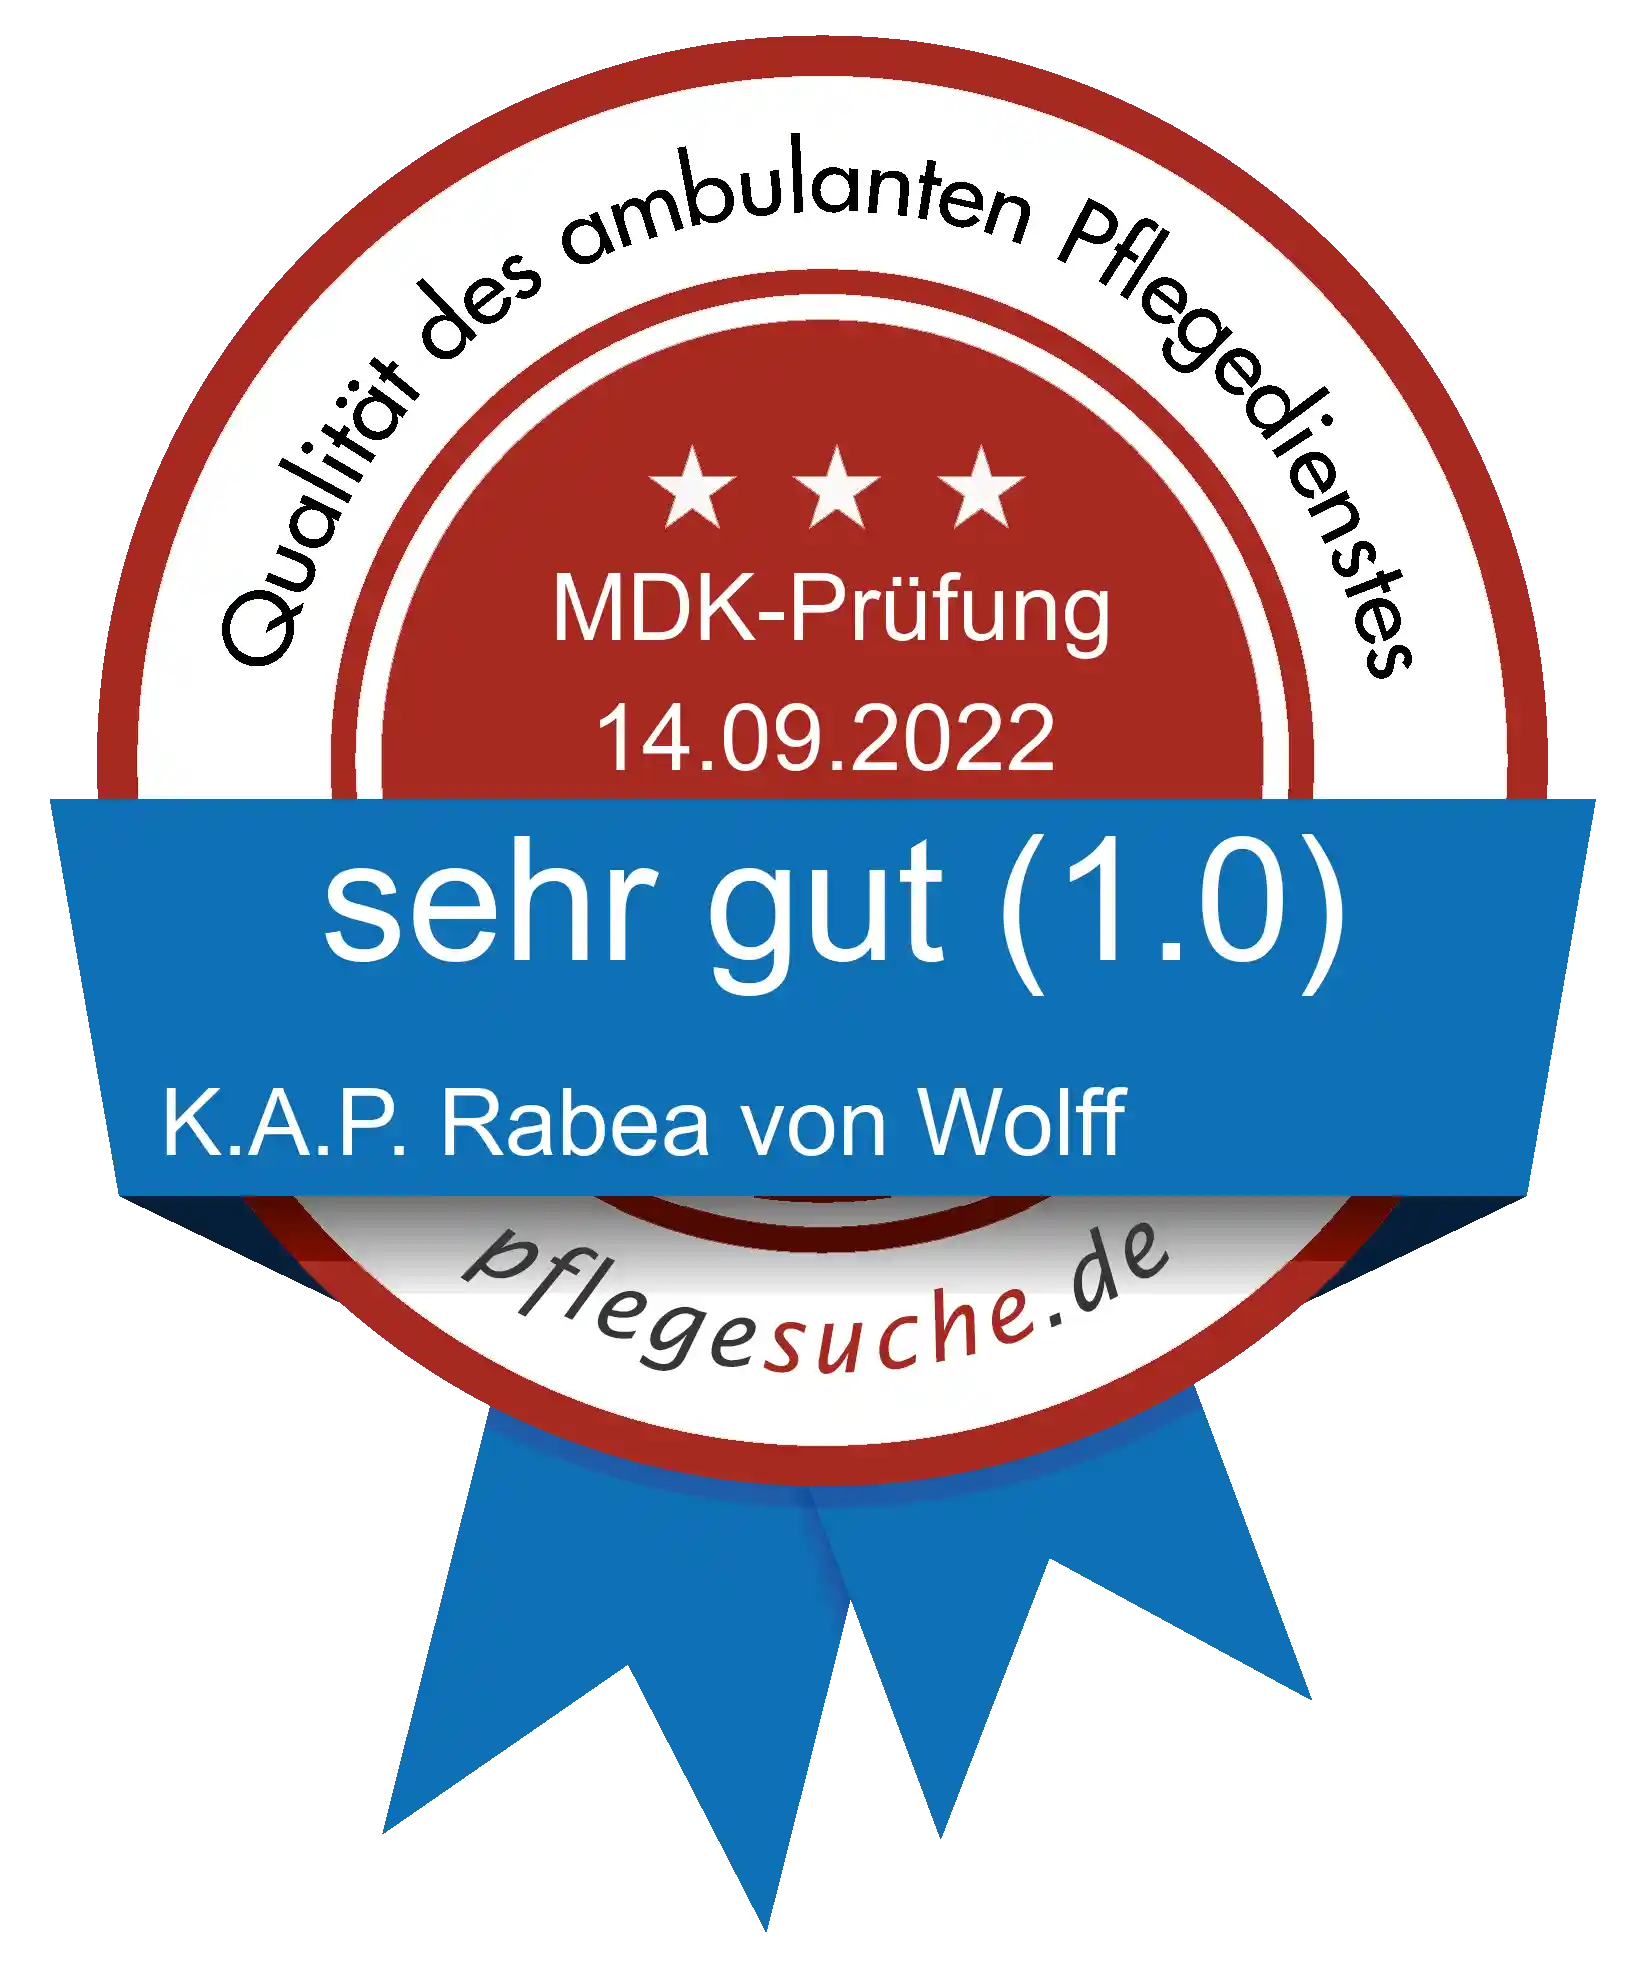 Siegel Benotung: K.A.P. Rabea von Wolff